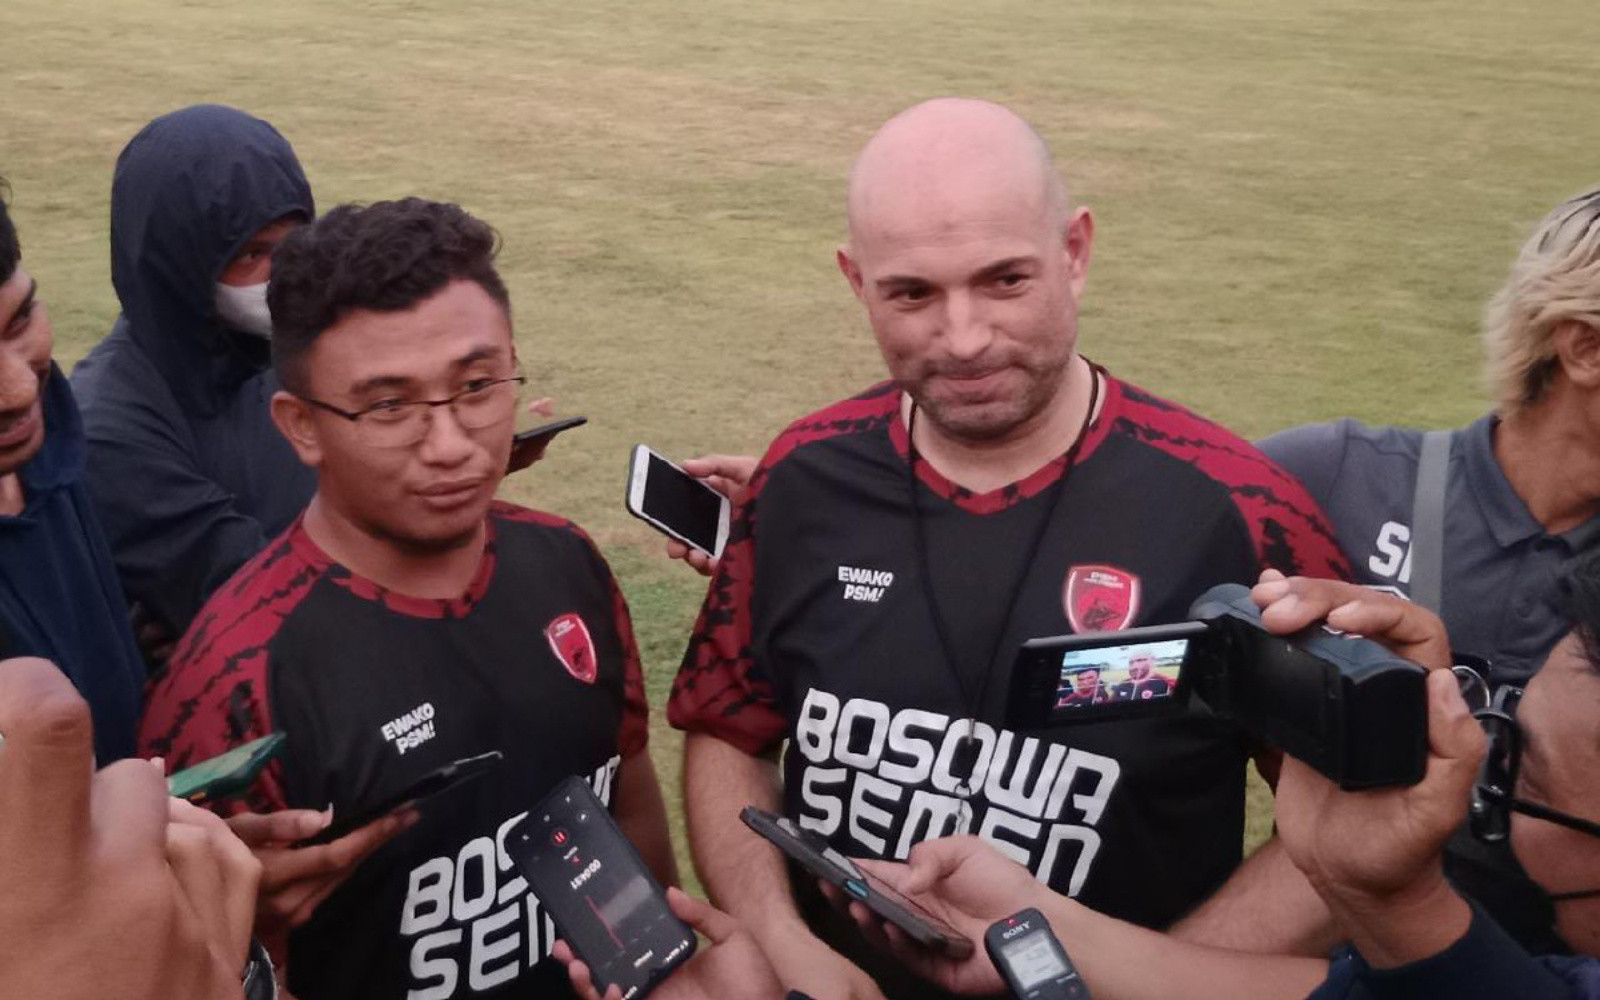 Jelang Laga Lawan Borneo FC, Bernardo Tavares Singgung Wasit Indonesia - JPNN.com